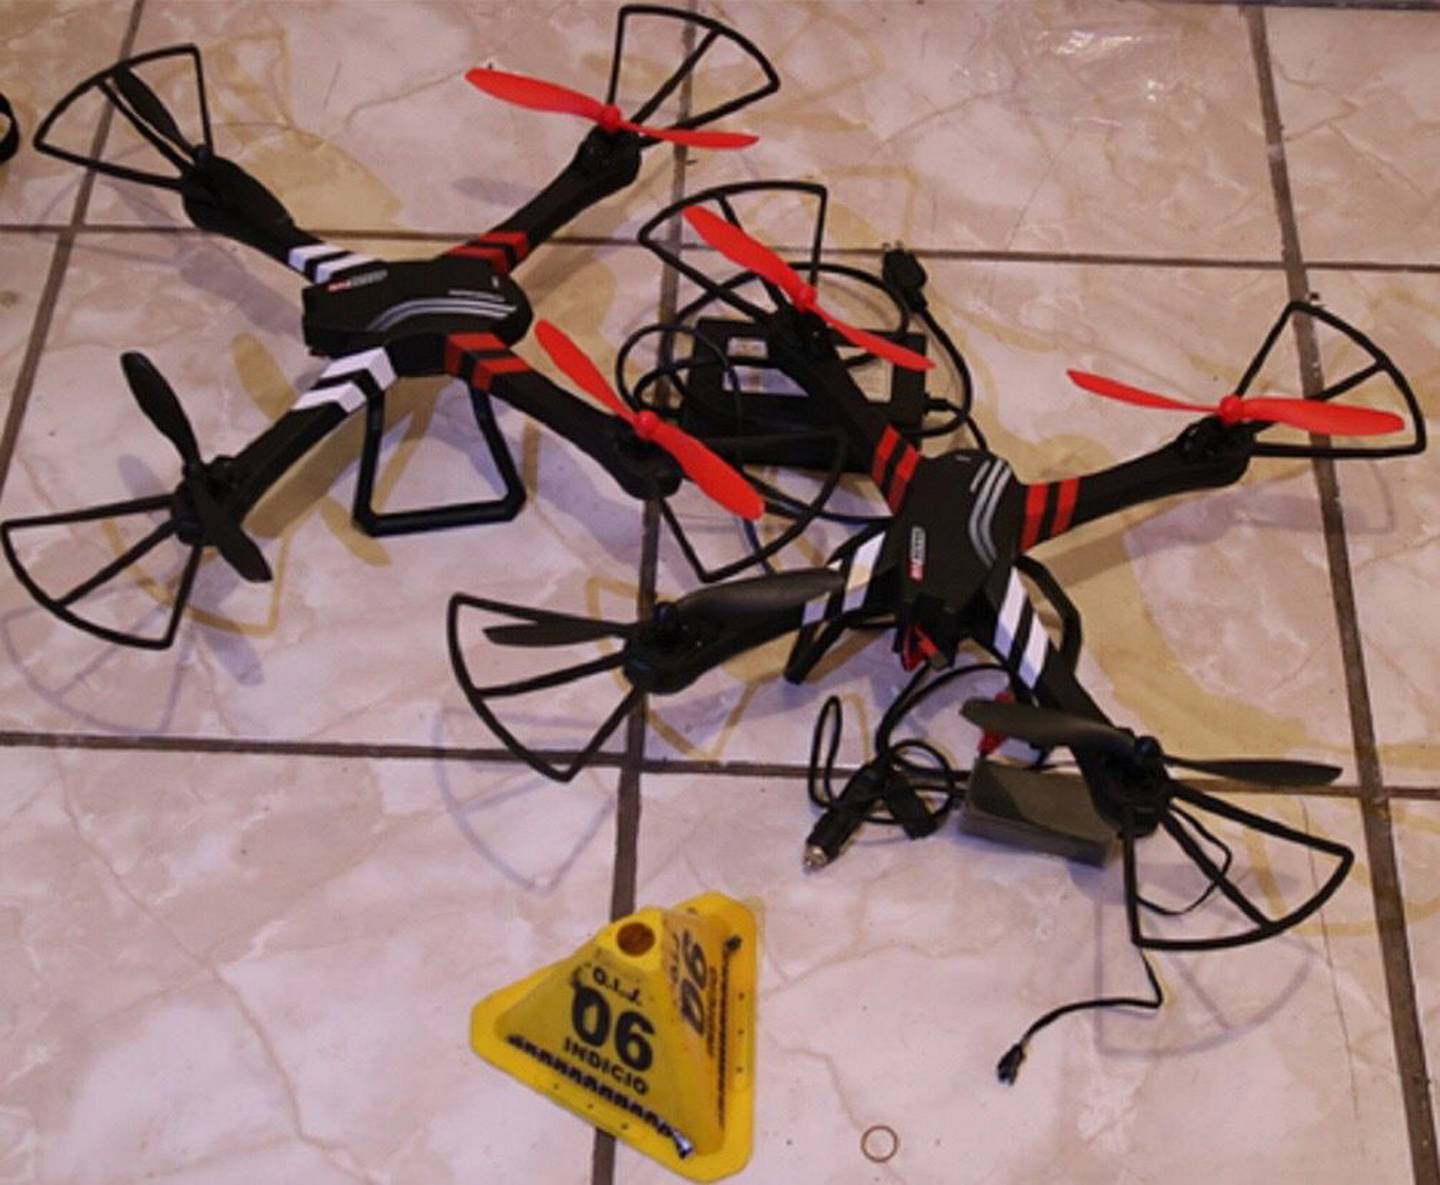 El sospechoso ocultaba varias armas en su casa y hasta un par de drones. Foto OIJ.